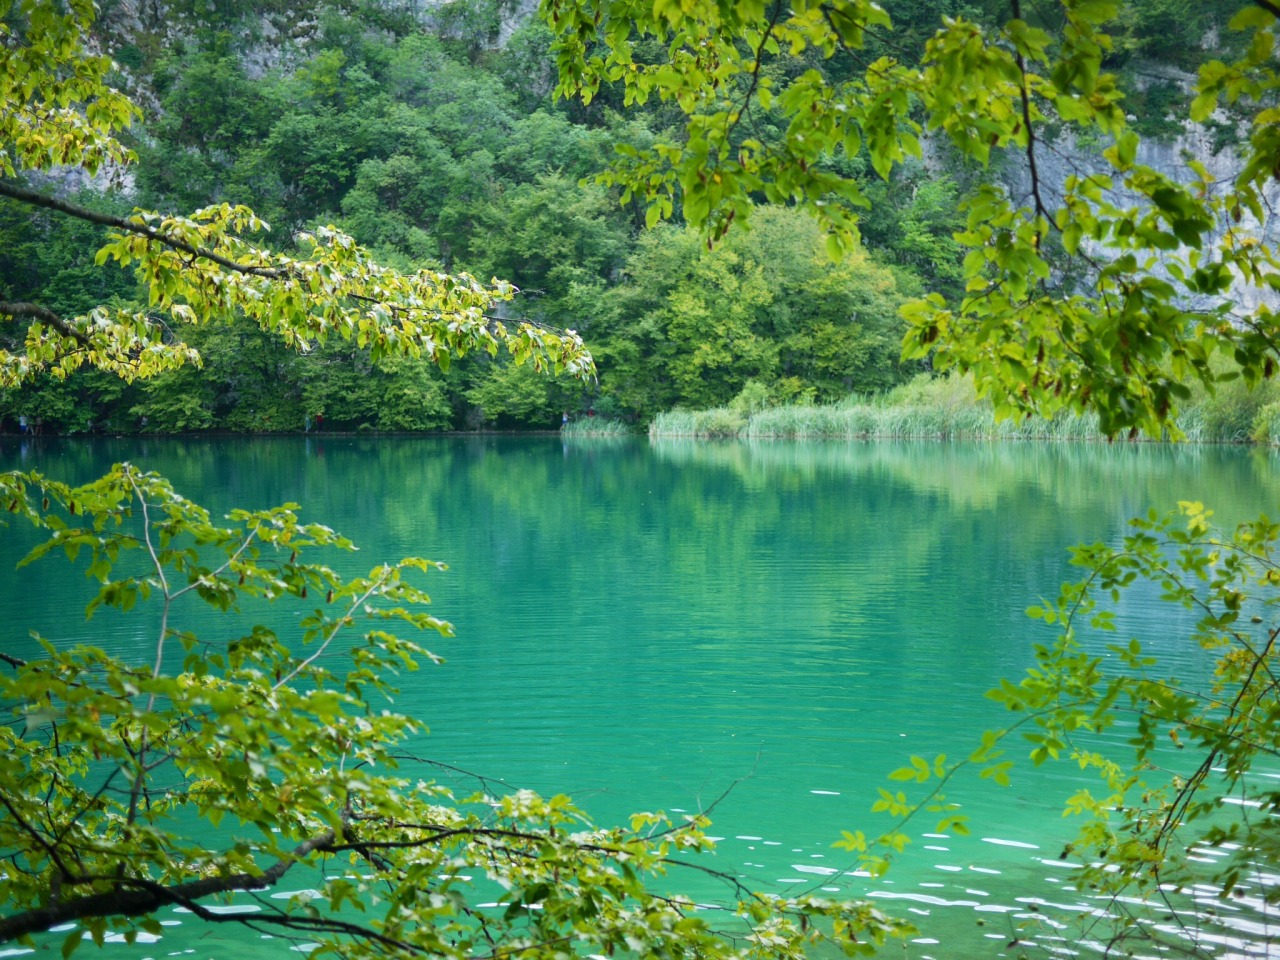 Back To Nature at Plitvicka Lakes, Croatia